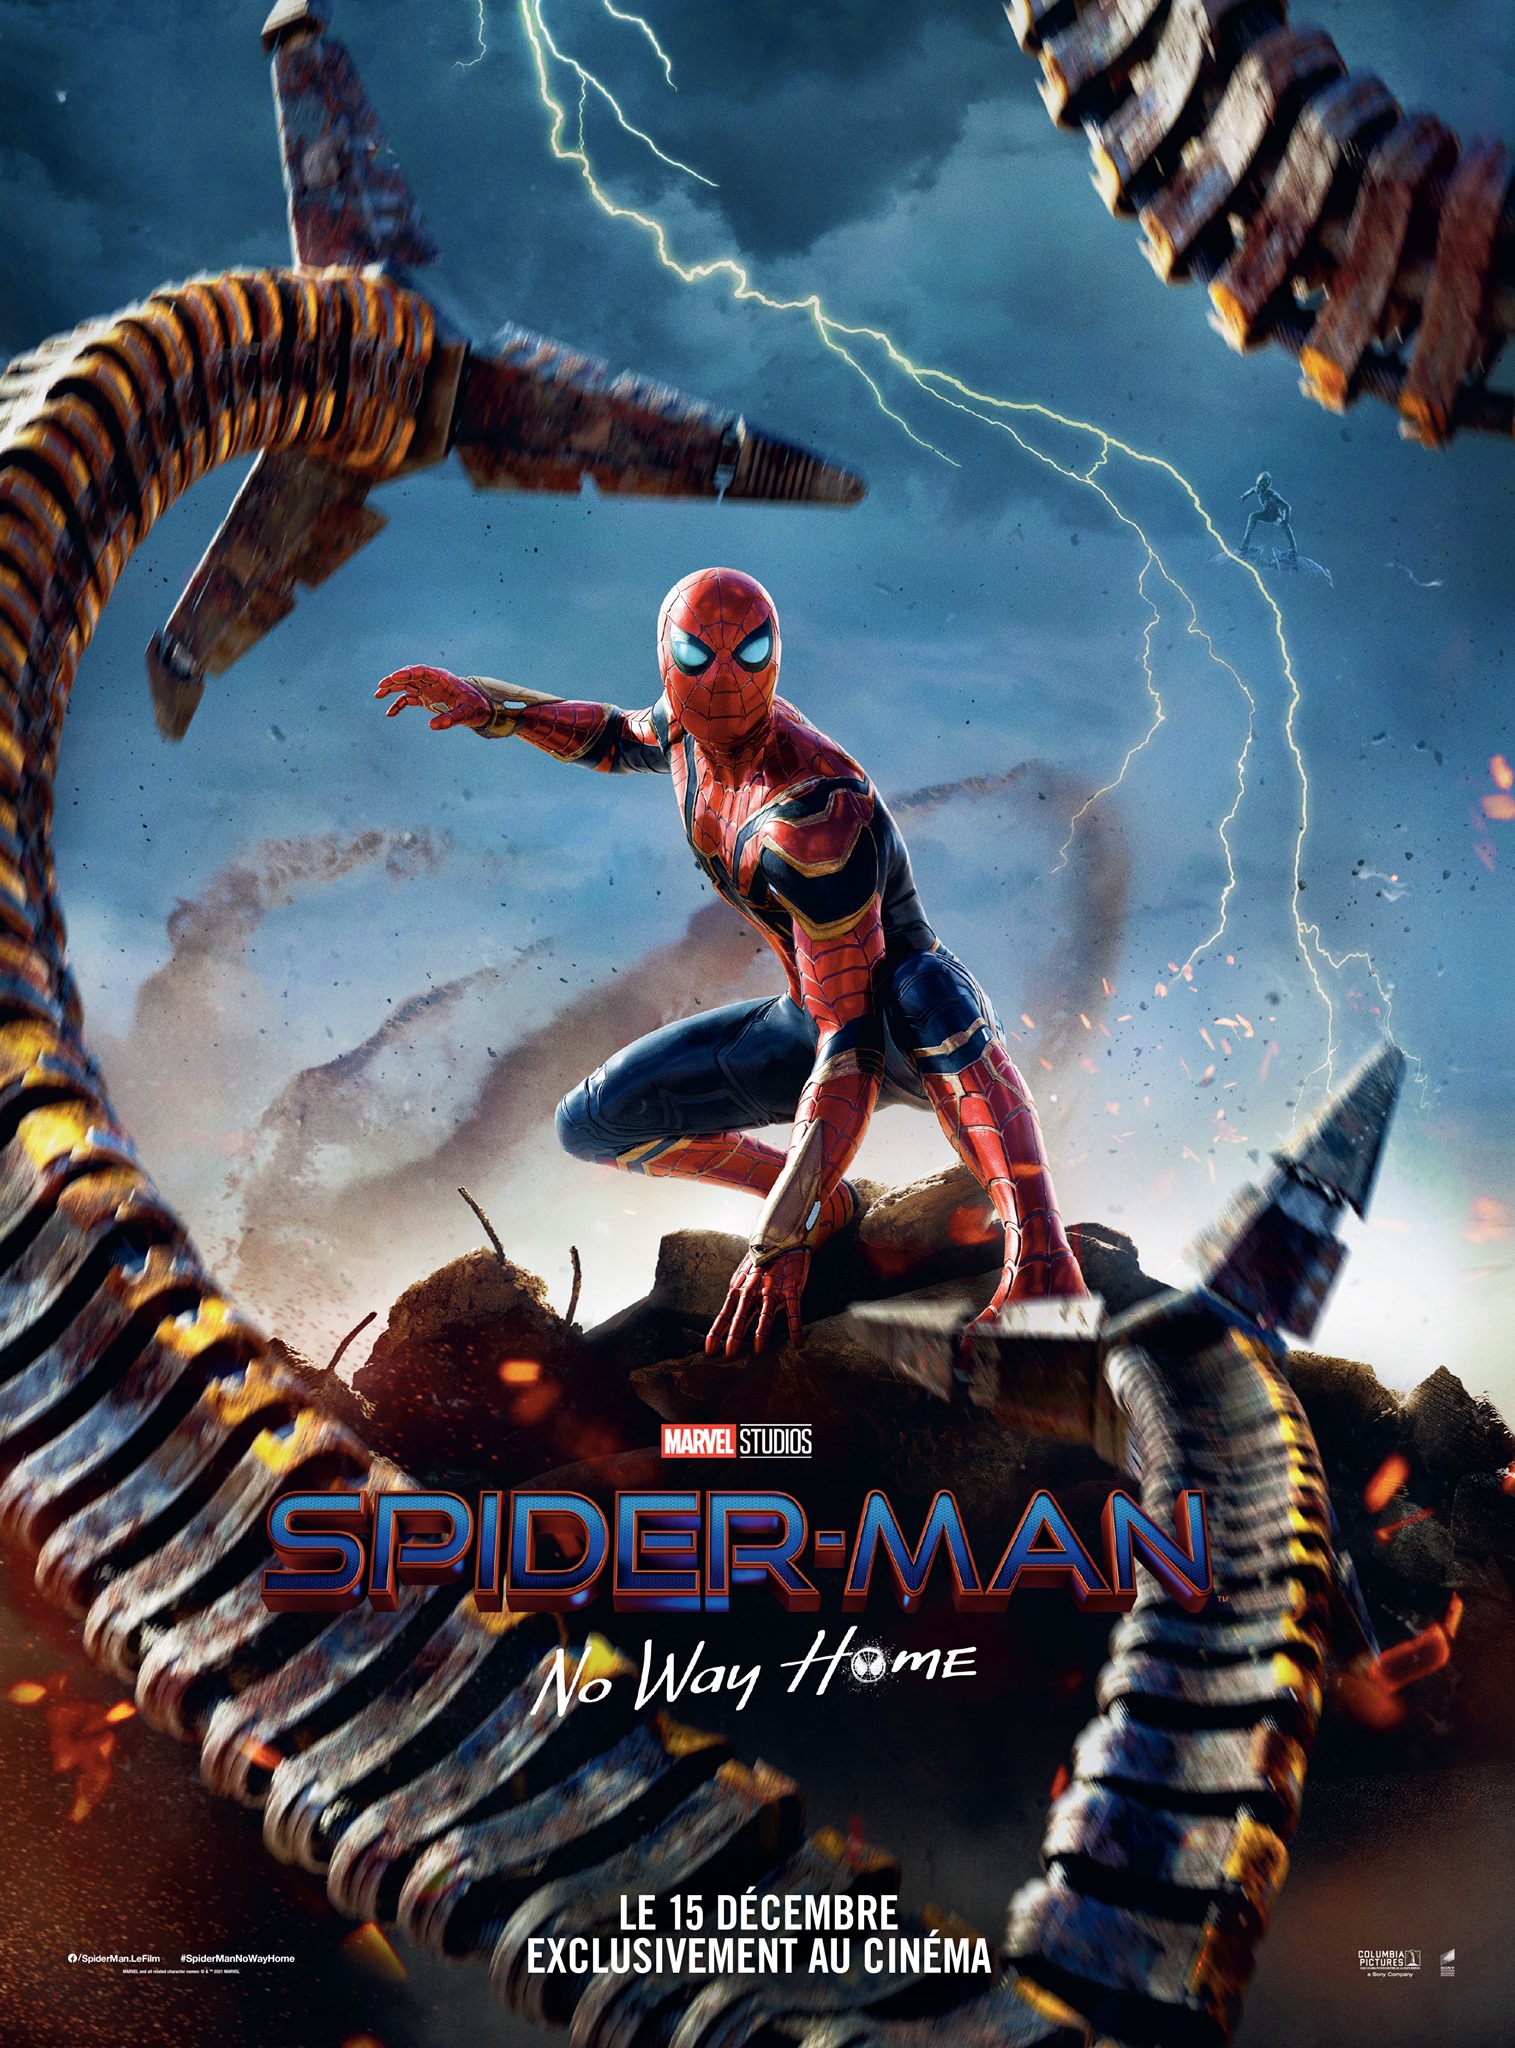 Affiche teaser du film Spider-Man: No Way Home réalisé par Jon Watts, d’après un scénario de Chris McKenna & Erik Sommers, avec Tom Holland